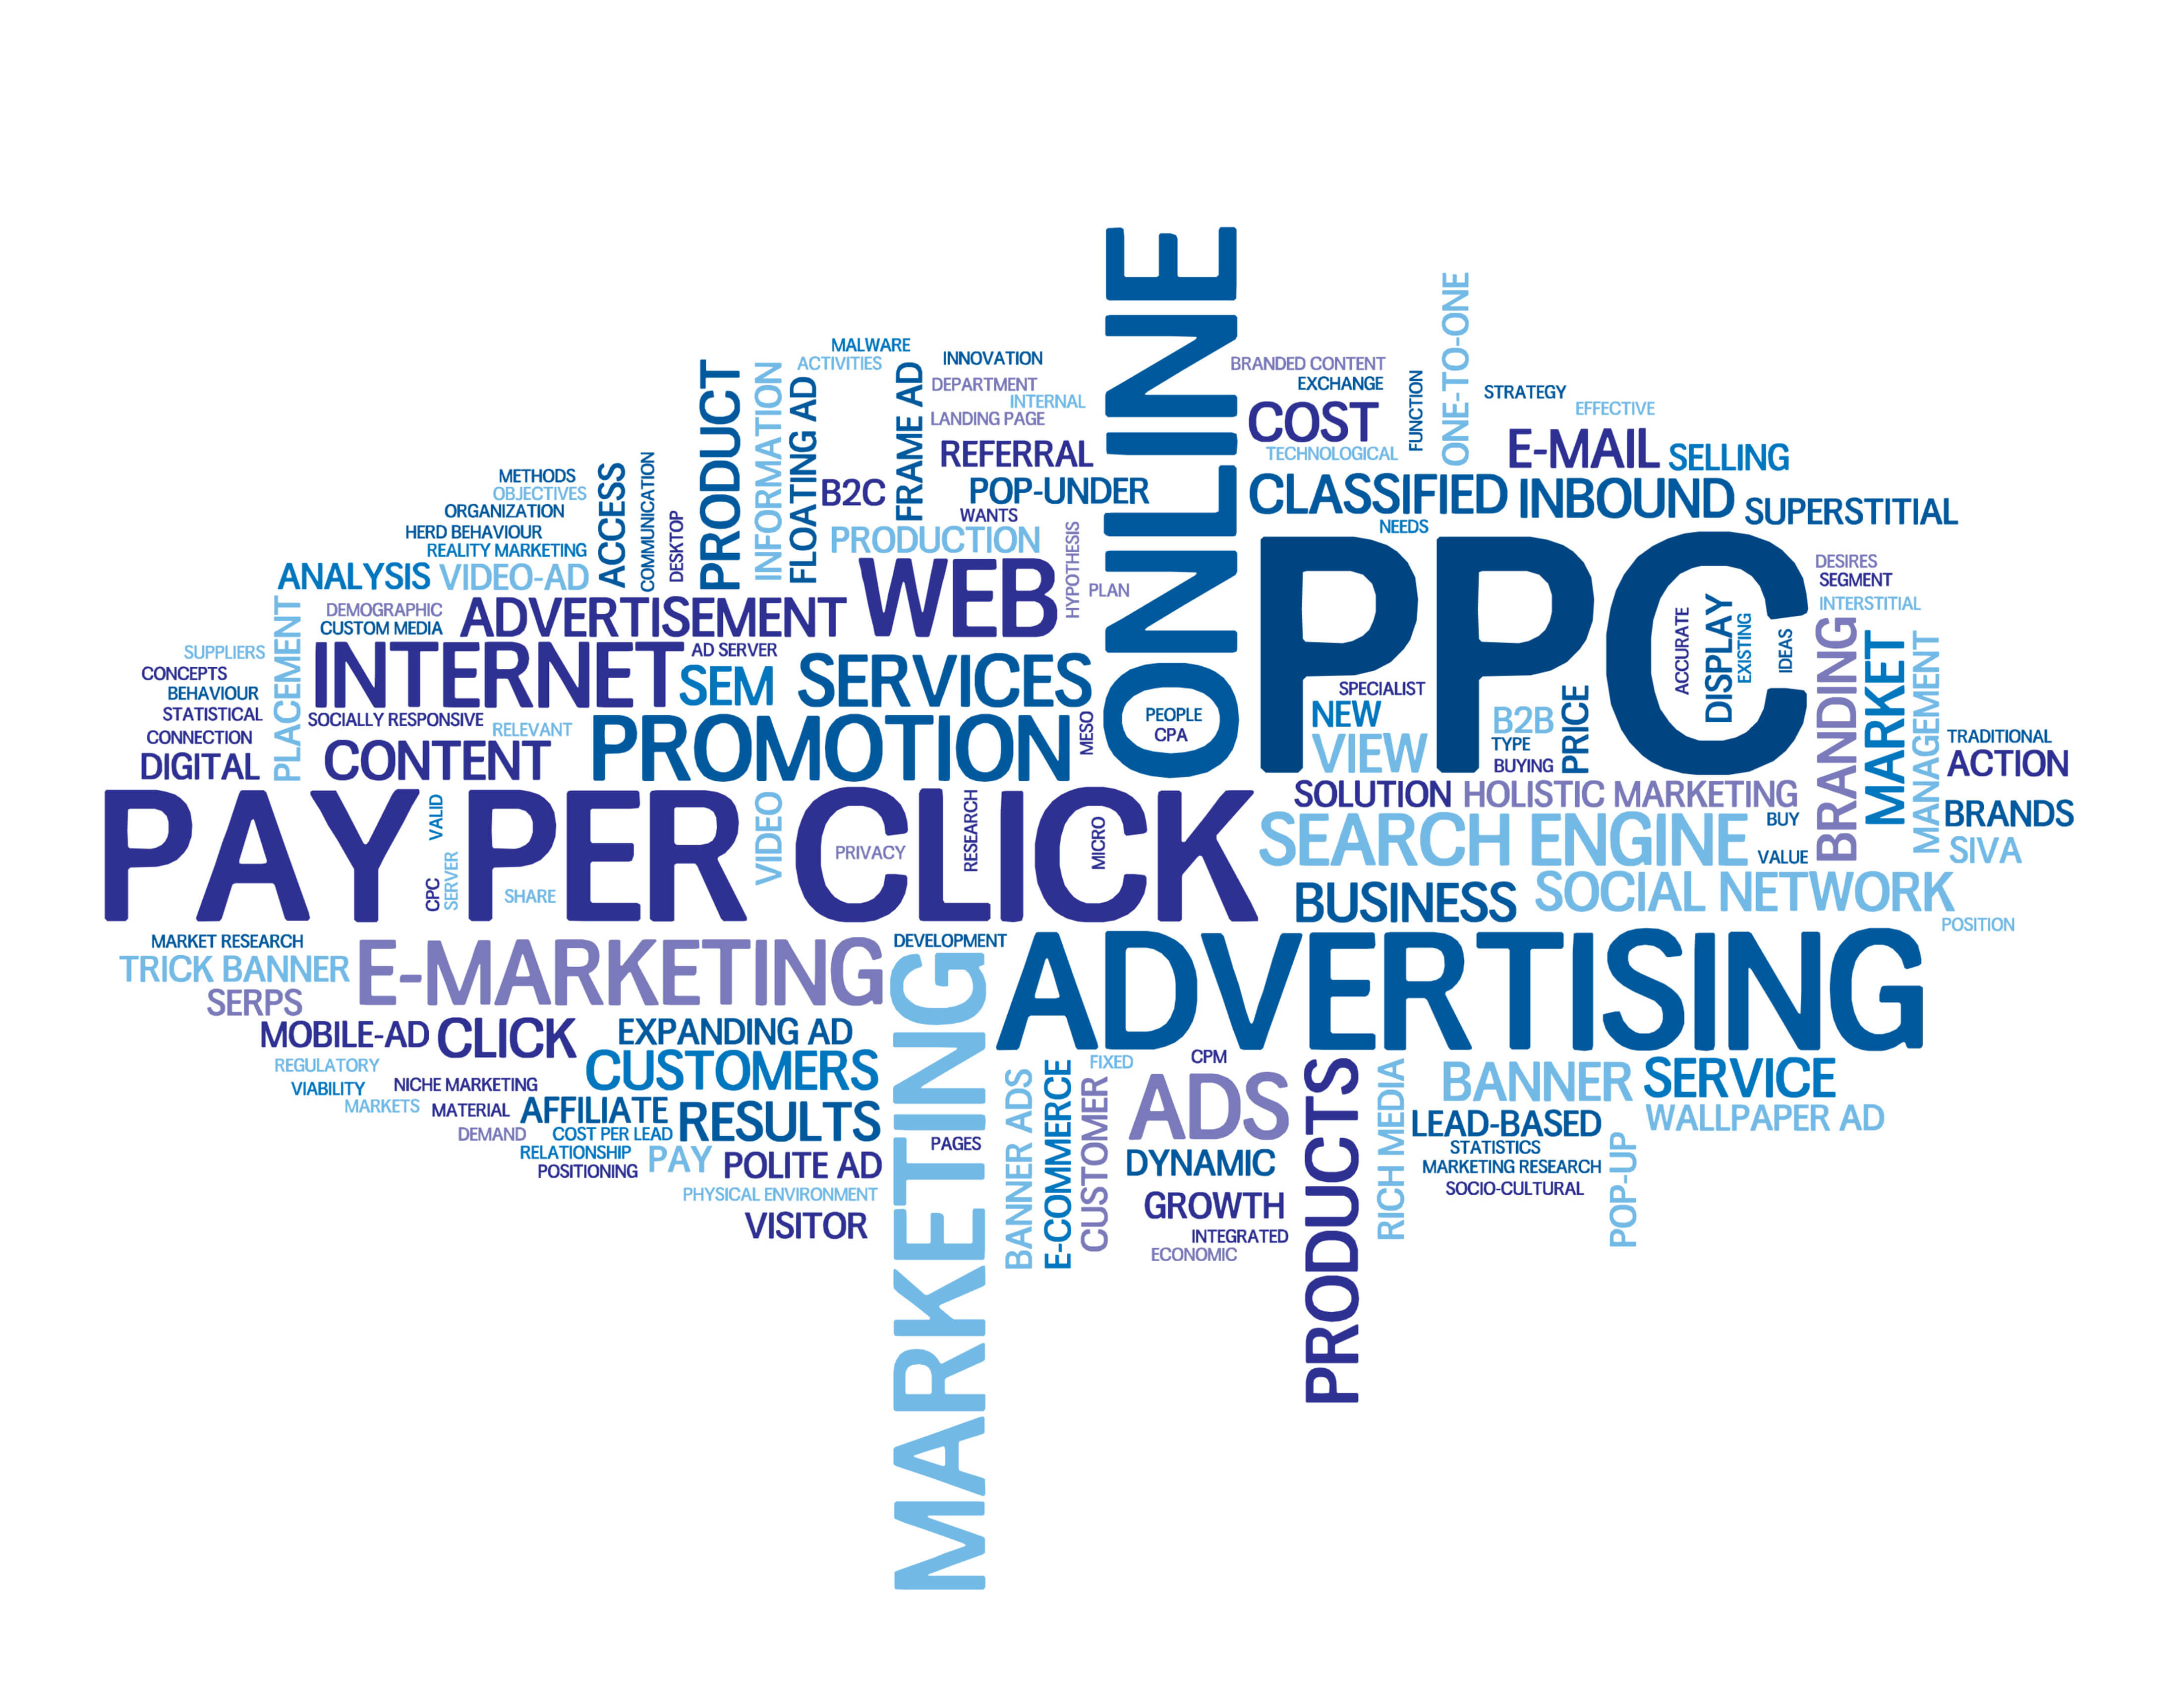 Advertising marketing is. PPC маркетинг. Облако тегов маркетинг. Click реклама. Нетворкинг.